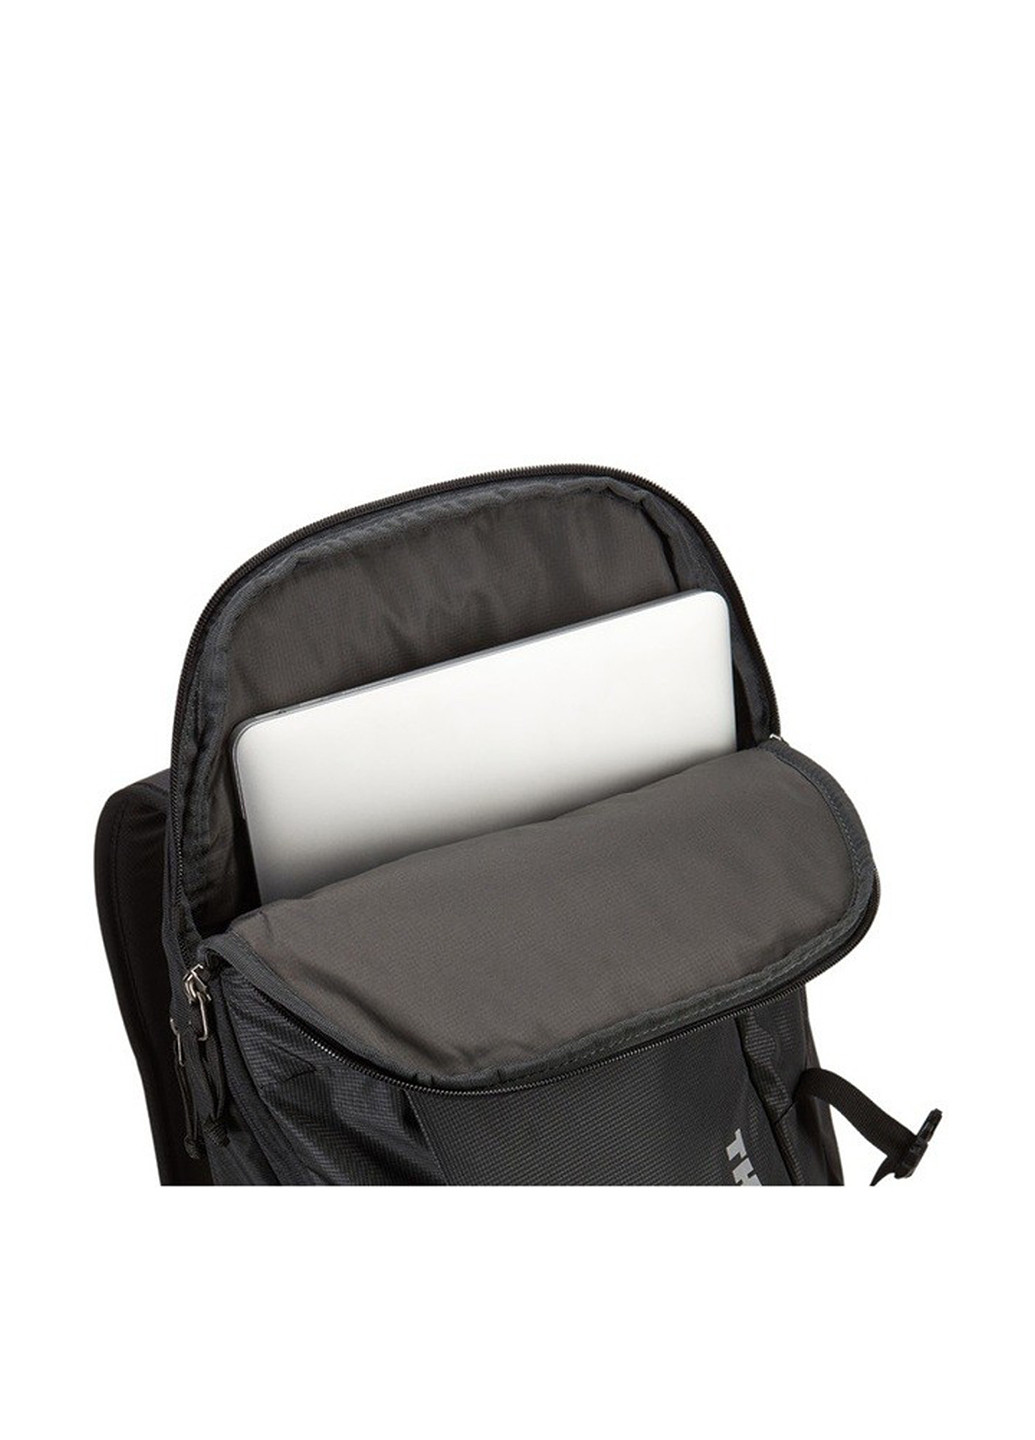 Рюкзак для ноутбука Backpack EnRoute 20L TEBP-315 (Dark Forest) Thule backpackenroute 20l tebp-315 (dark forest) (135165309)